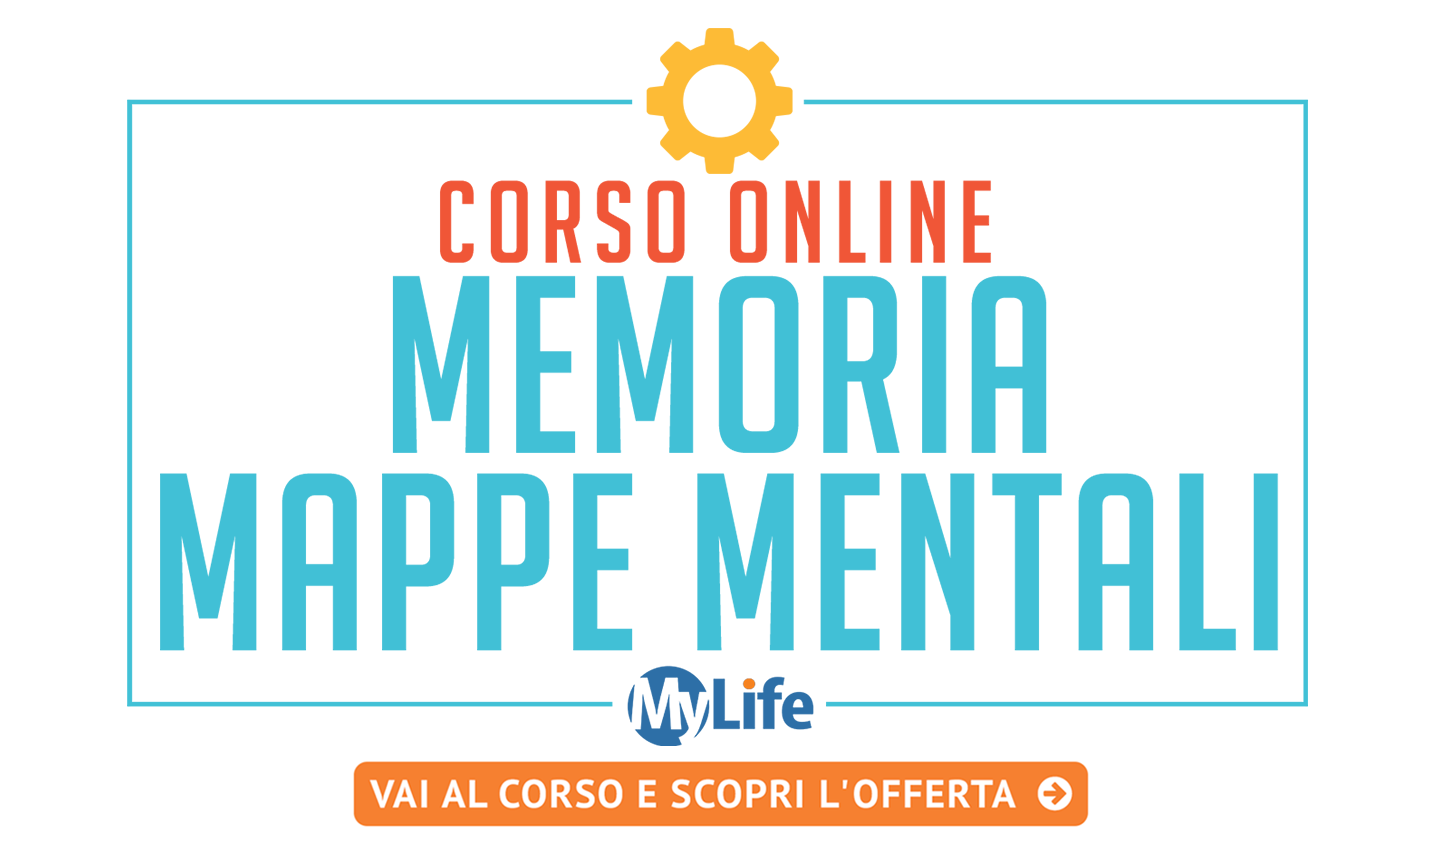 Corso di Memoria e Mappe mentali - Corso Online